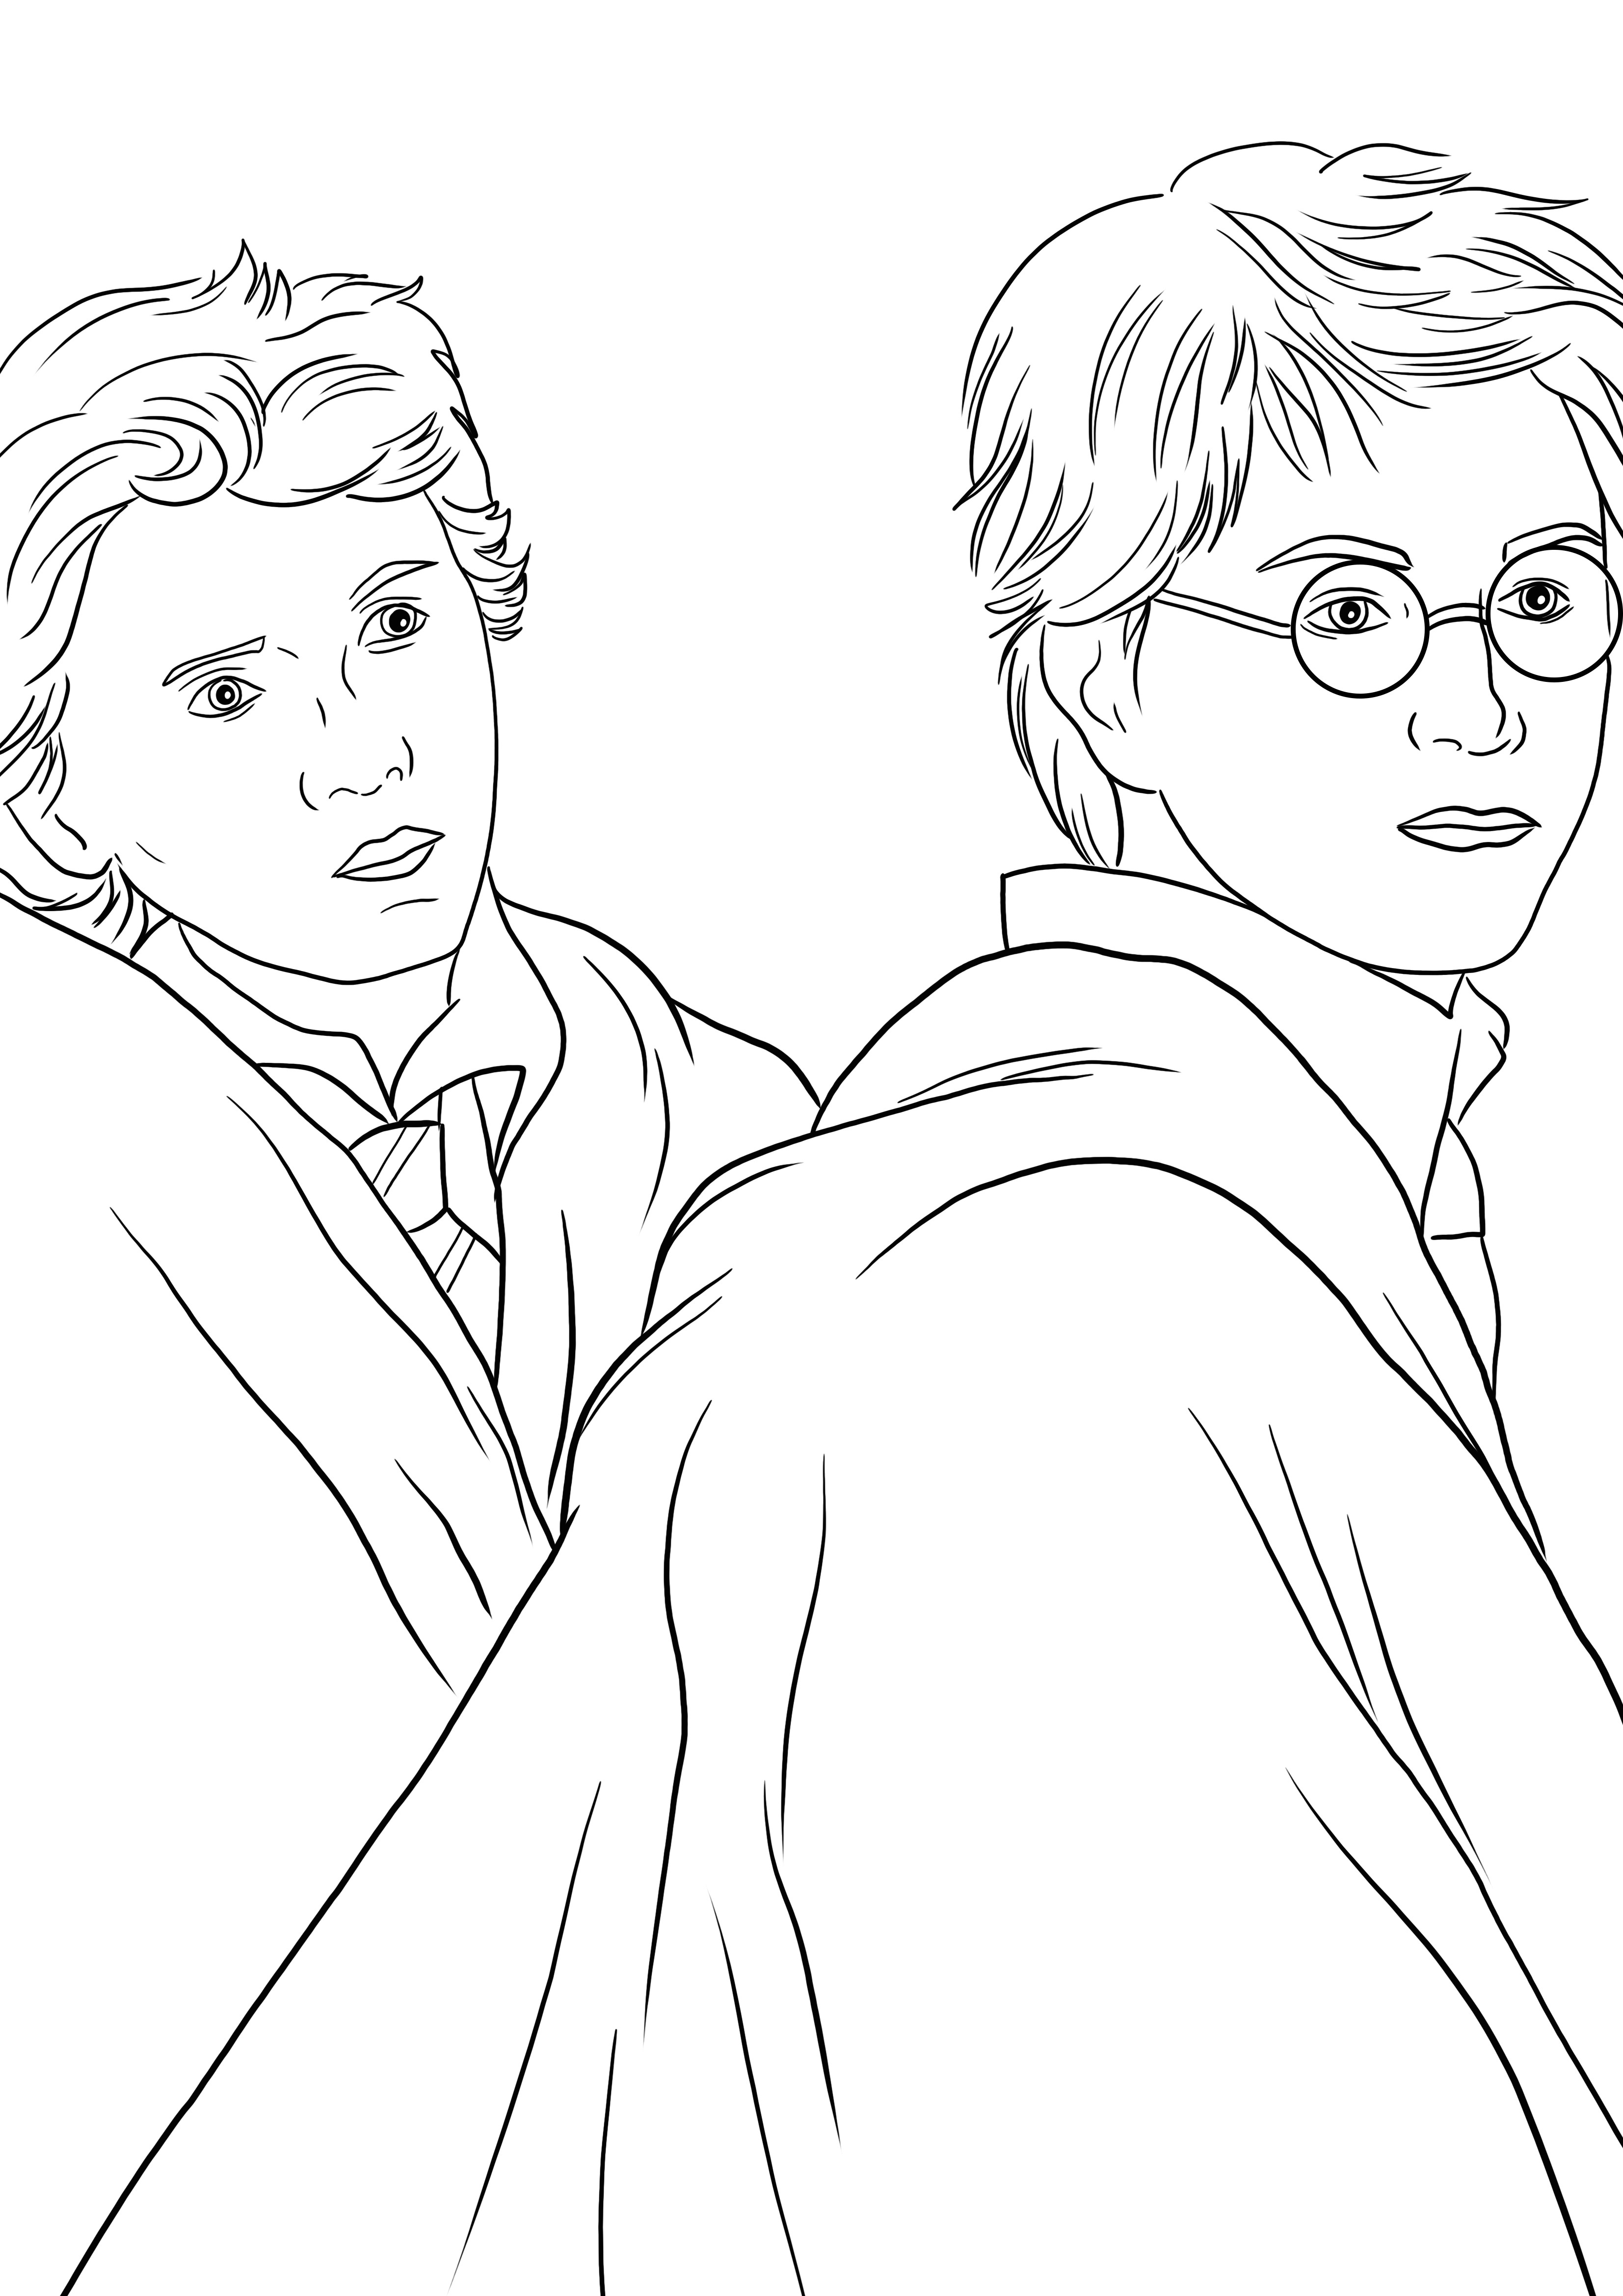 Harry ja Weasley värityssivu tulostettavaksi tai ladattavaksi lapsille väritettäväksi